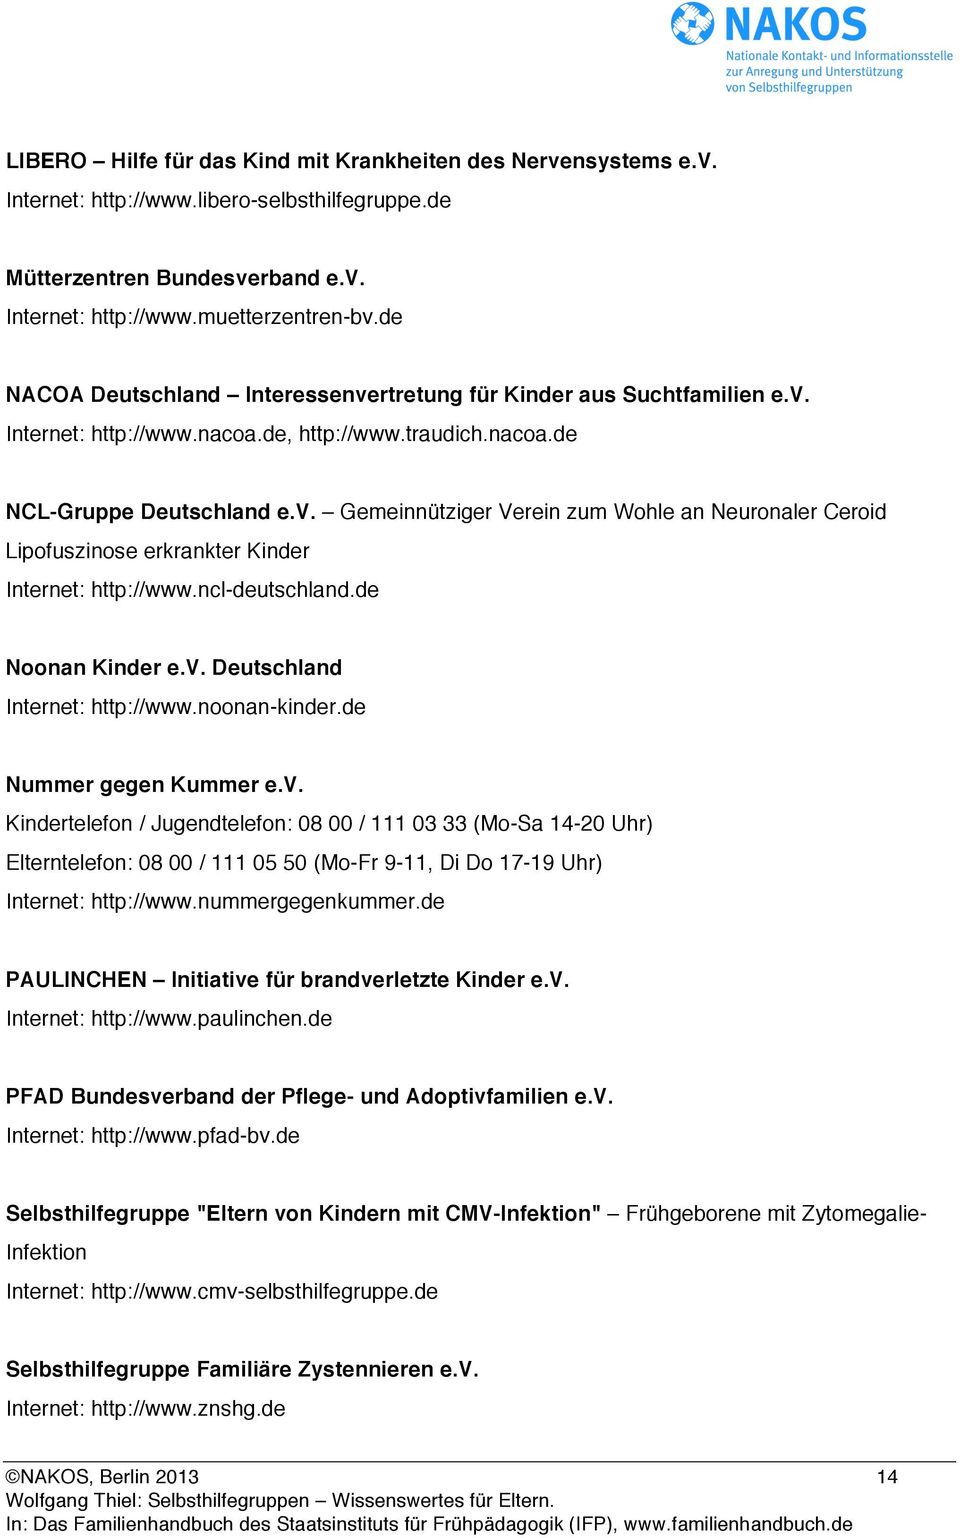 ncl-deutschland.de Noonan Kinder e.v. Deutschland Internet: http://www.noonan-kinder.de Nummer gegen Kummer e.v. Kindertelefon / Jugendtelefon: 08 00 / 111 03 33 (Mo-Sa 14-20 Uhr) Elterntelefon: 08 00 / 111 05 50 (Mo-Fr 9-11, Di Do 17-19 Uhr) Internet: http://www.